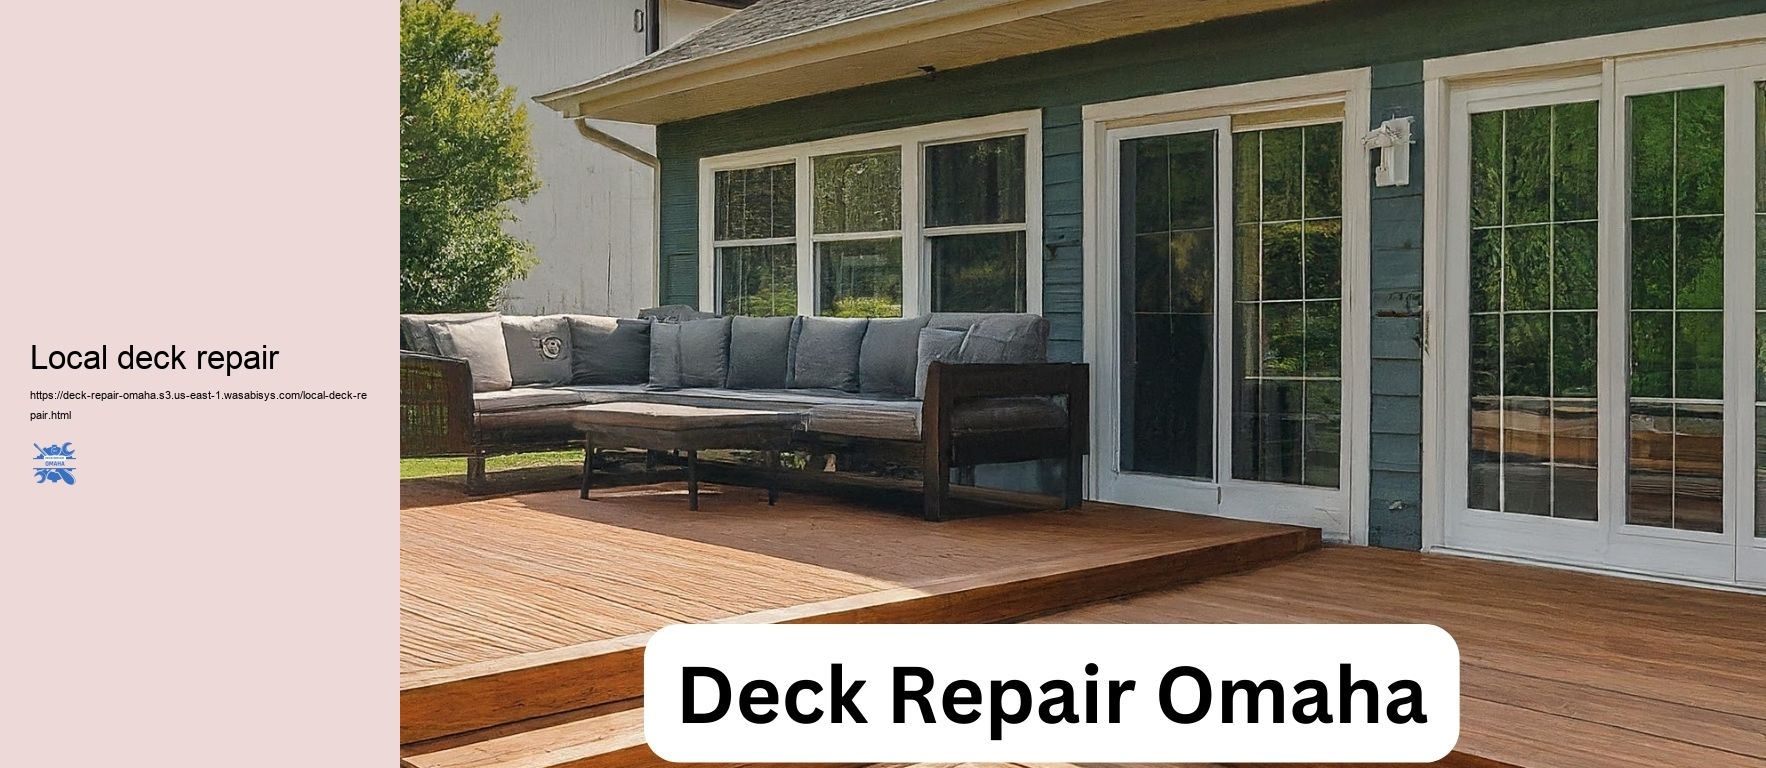 Local deck repair